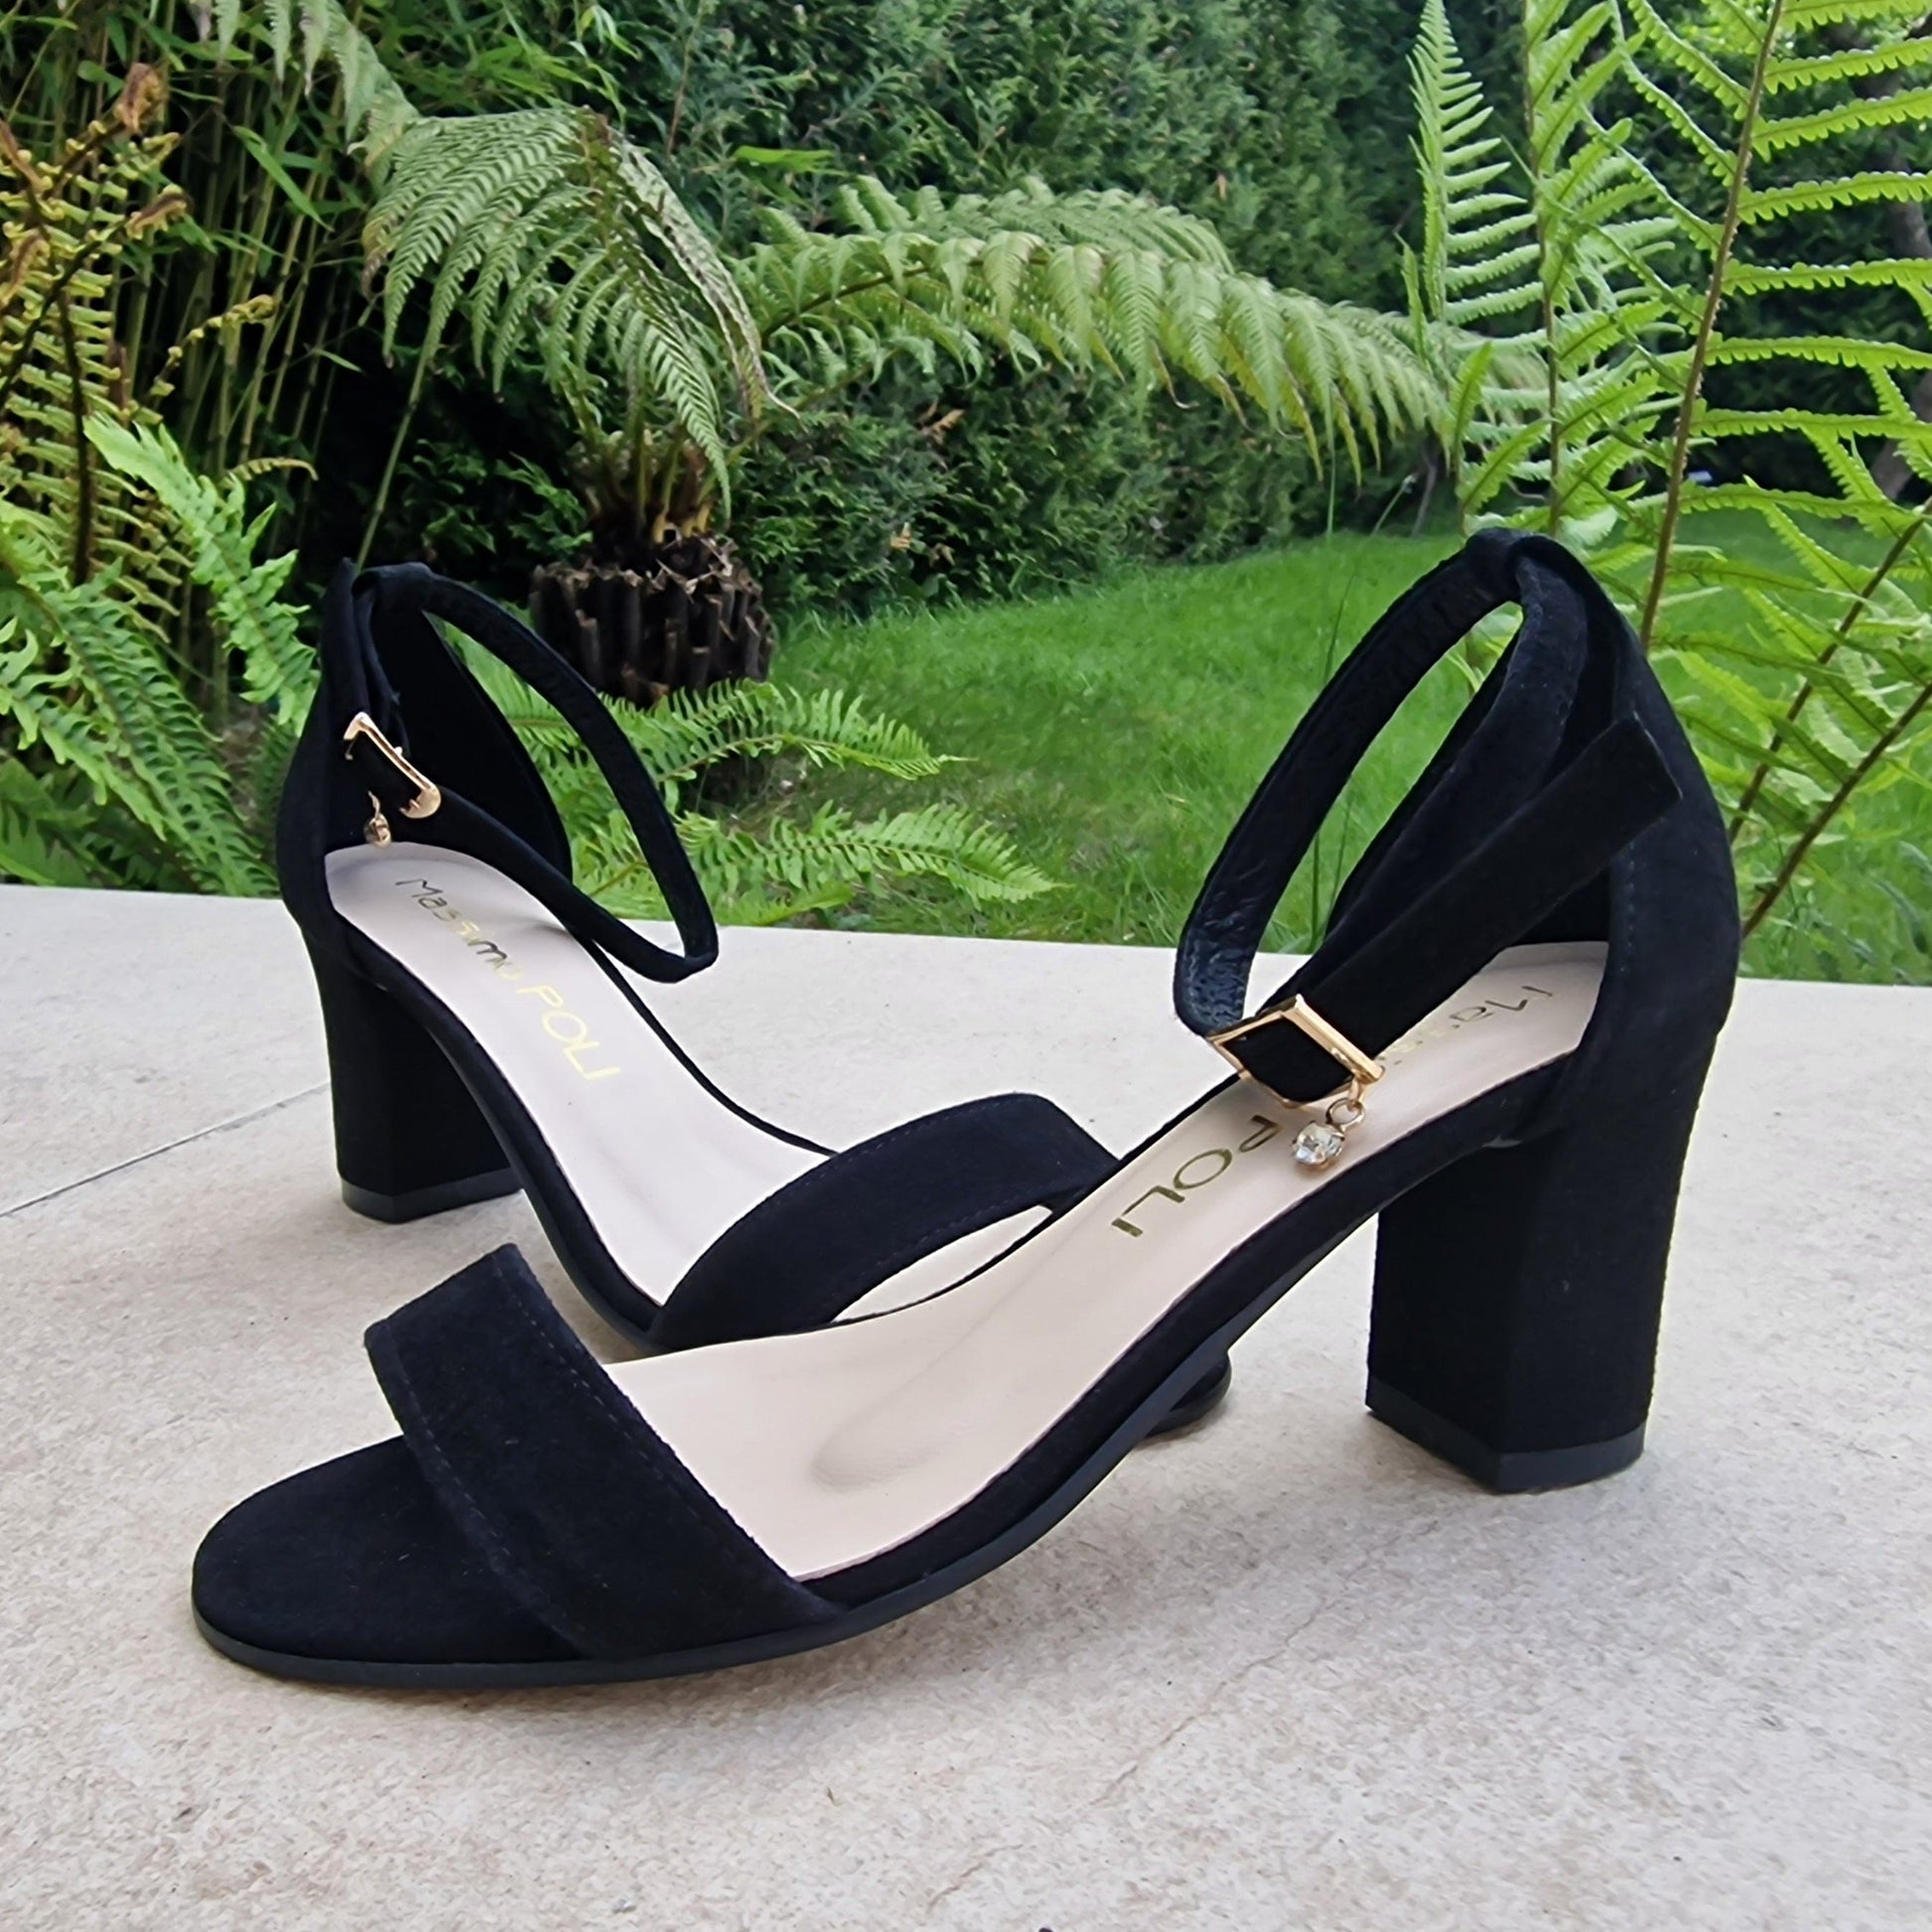 Black suede leather petite ladies sandals